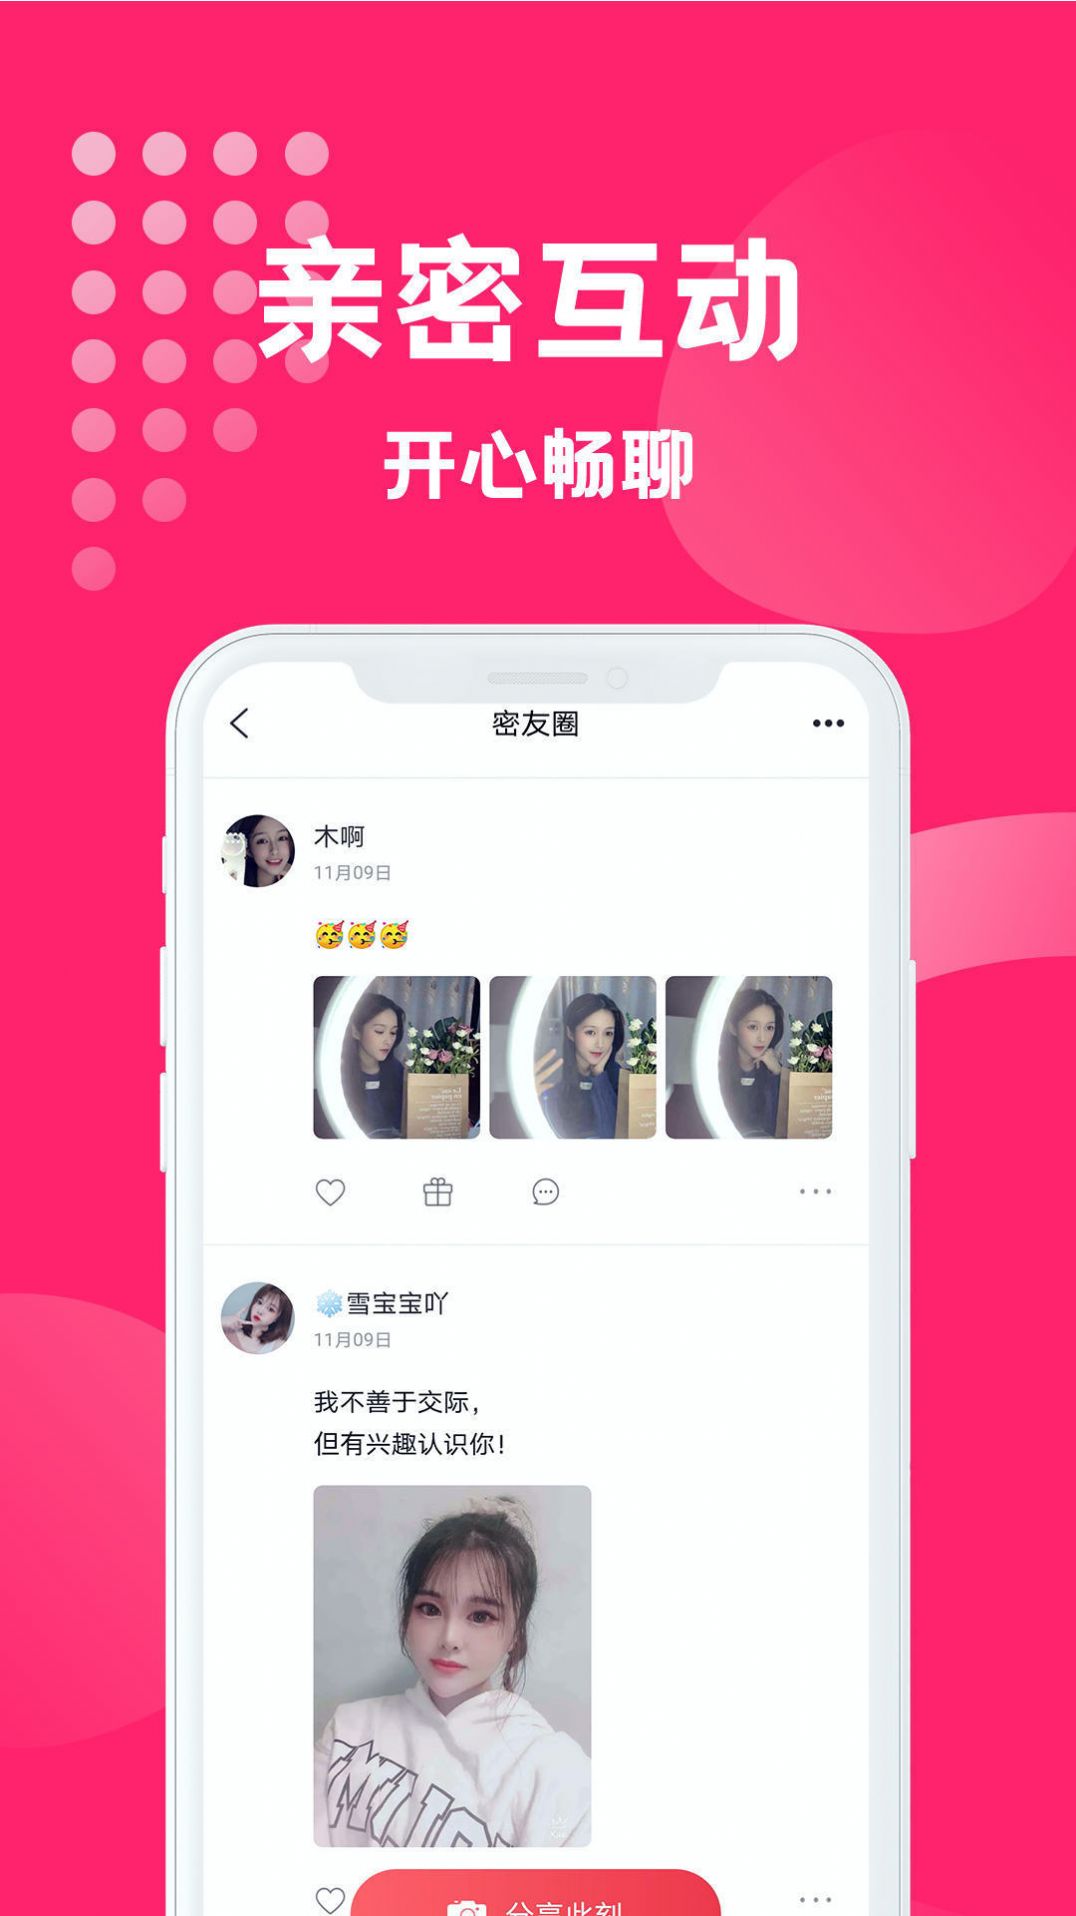 海南映乐寻缘交友平台App官方版图片1